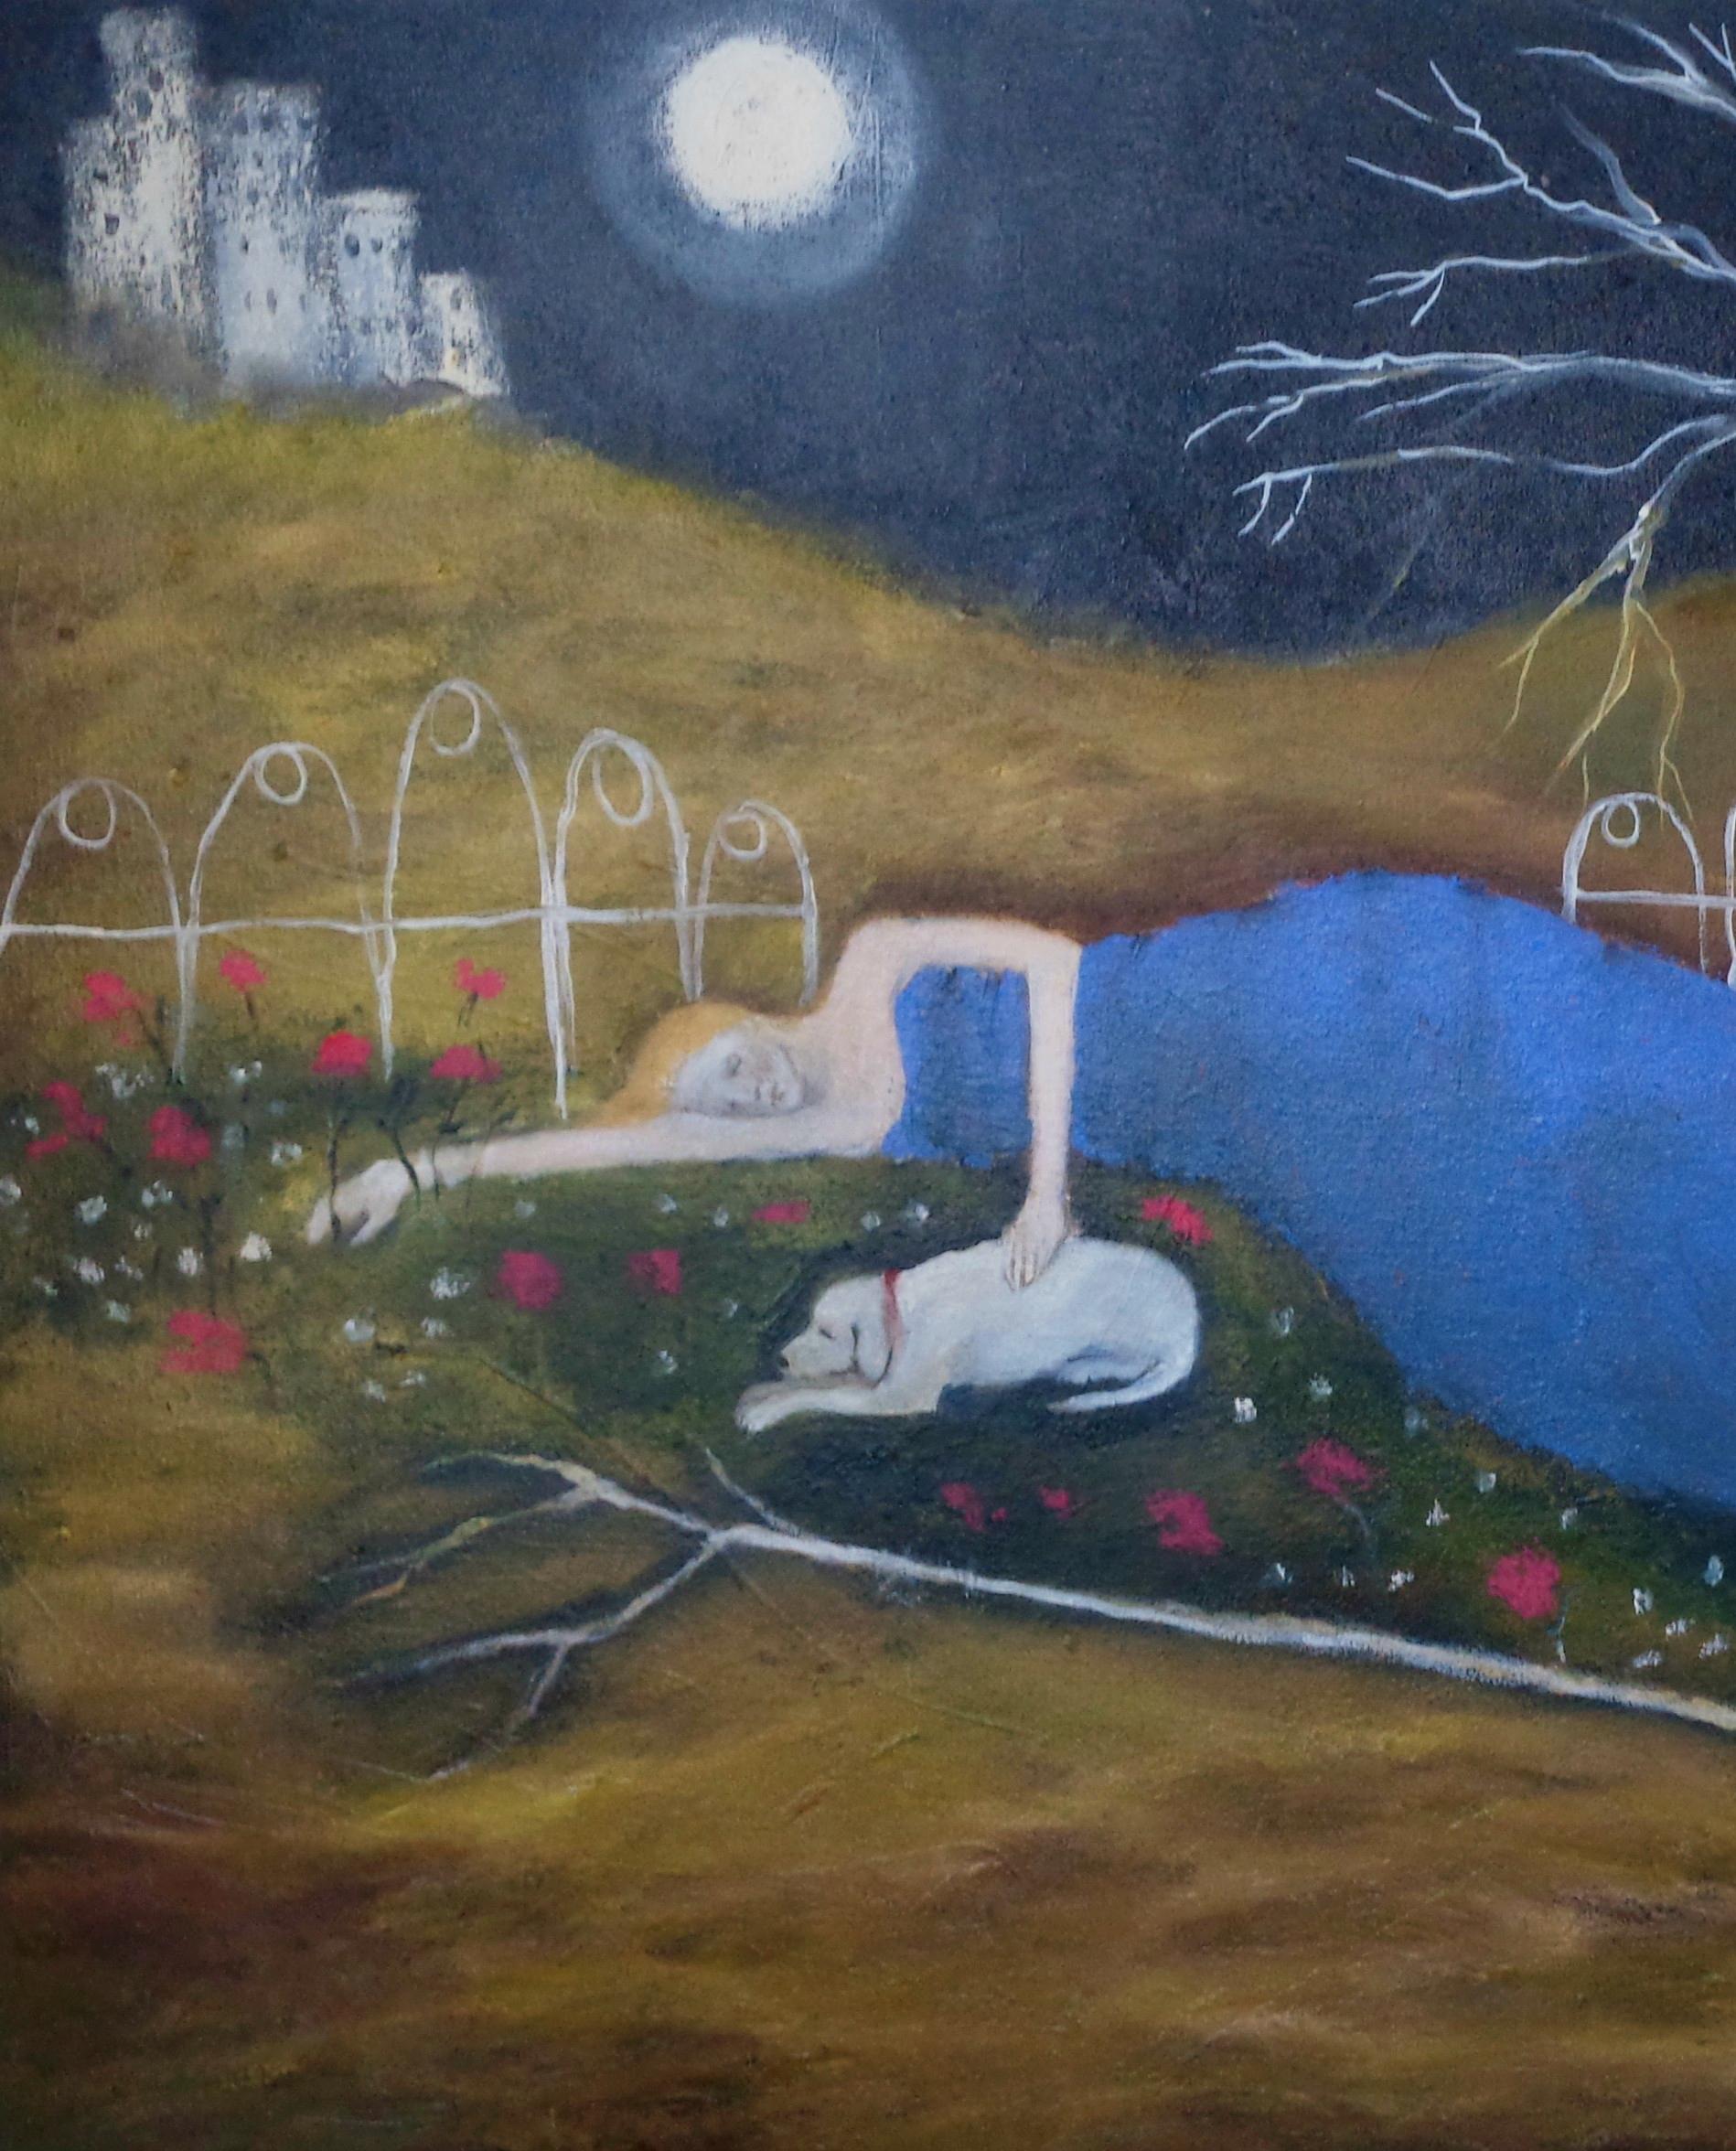 Pilger auf dem Tor, Frauen in den Künsten, Hoffnung und Weisheit, Öl, Natur – Painting von Jeanie Tomanek